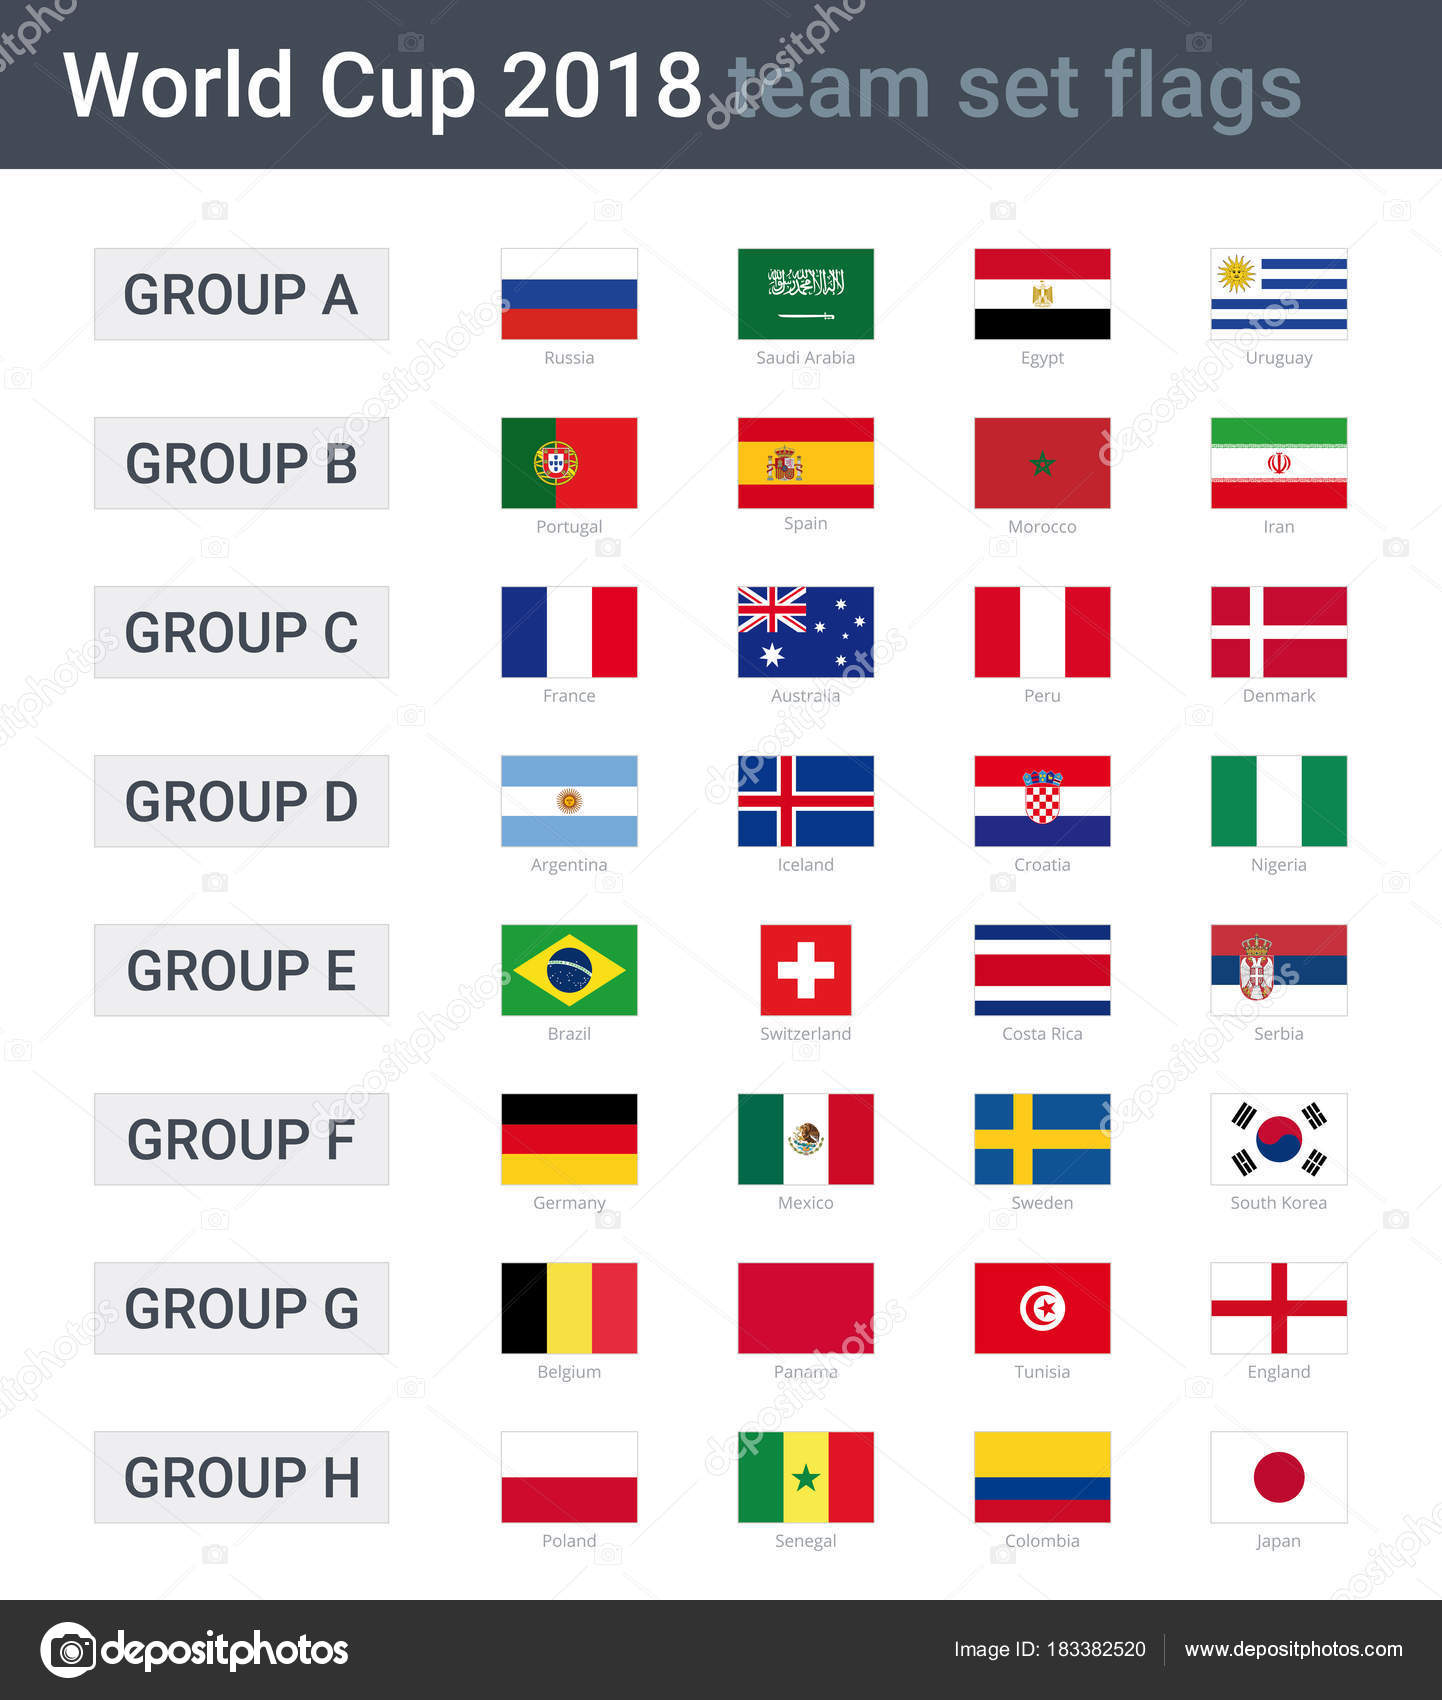 Copa do mundo 2022. modelo de calendário de jogos. tabela de resultados de  futebol grupo h, calendário de jogos arquivo vetorial.